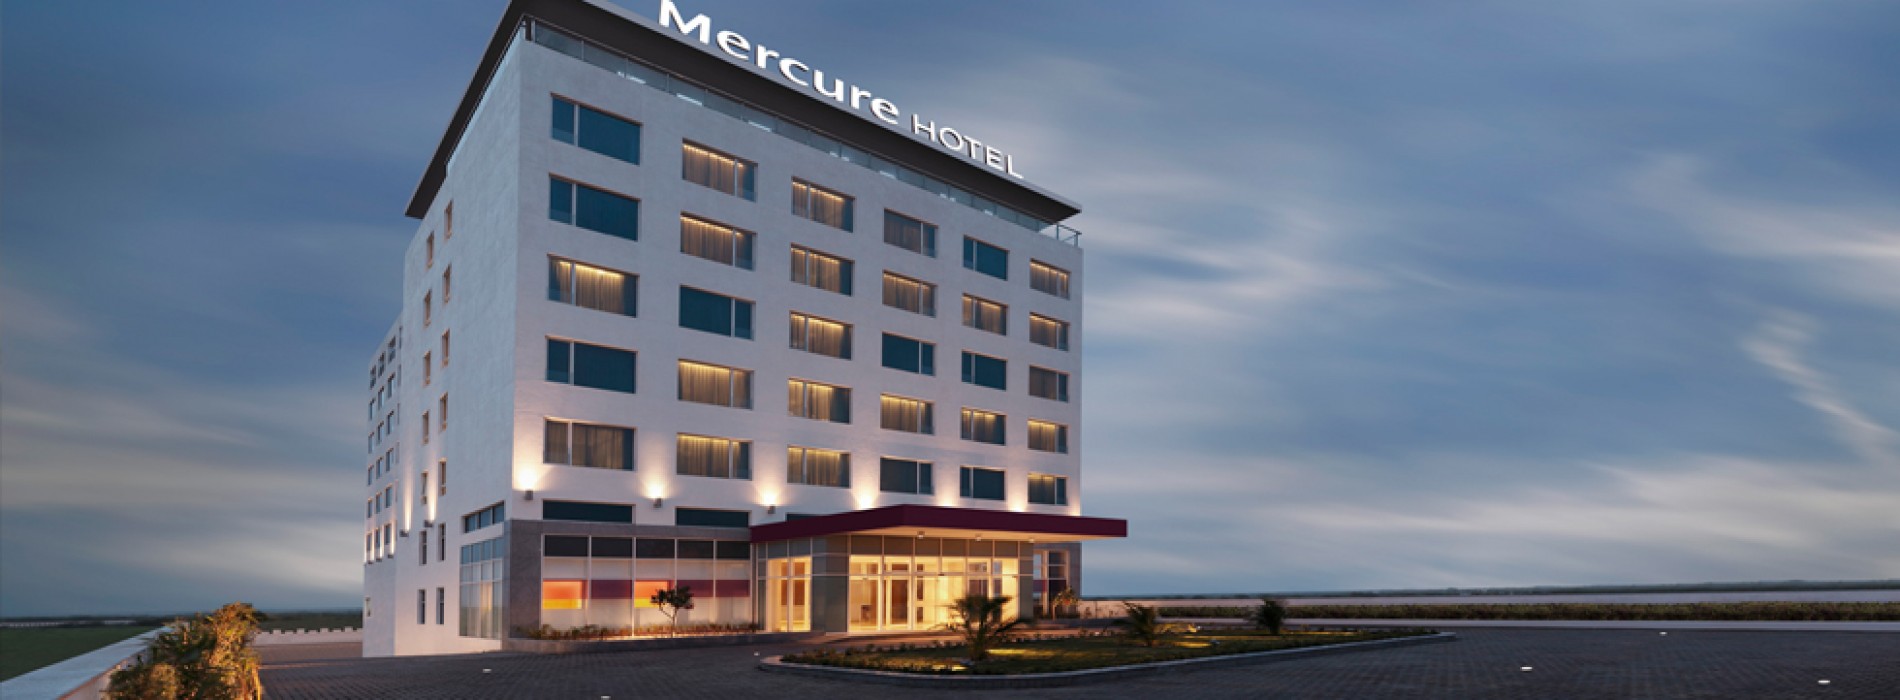 Dwarka gets its first Mercure hotel